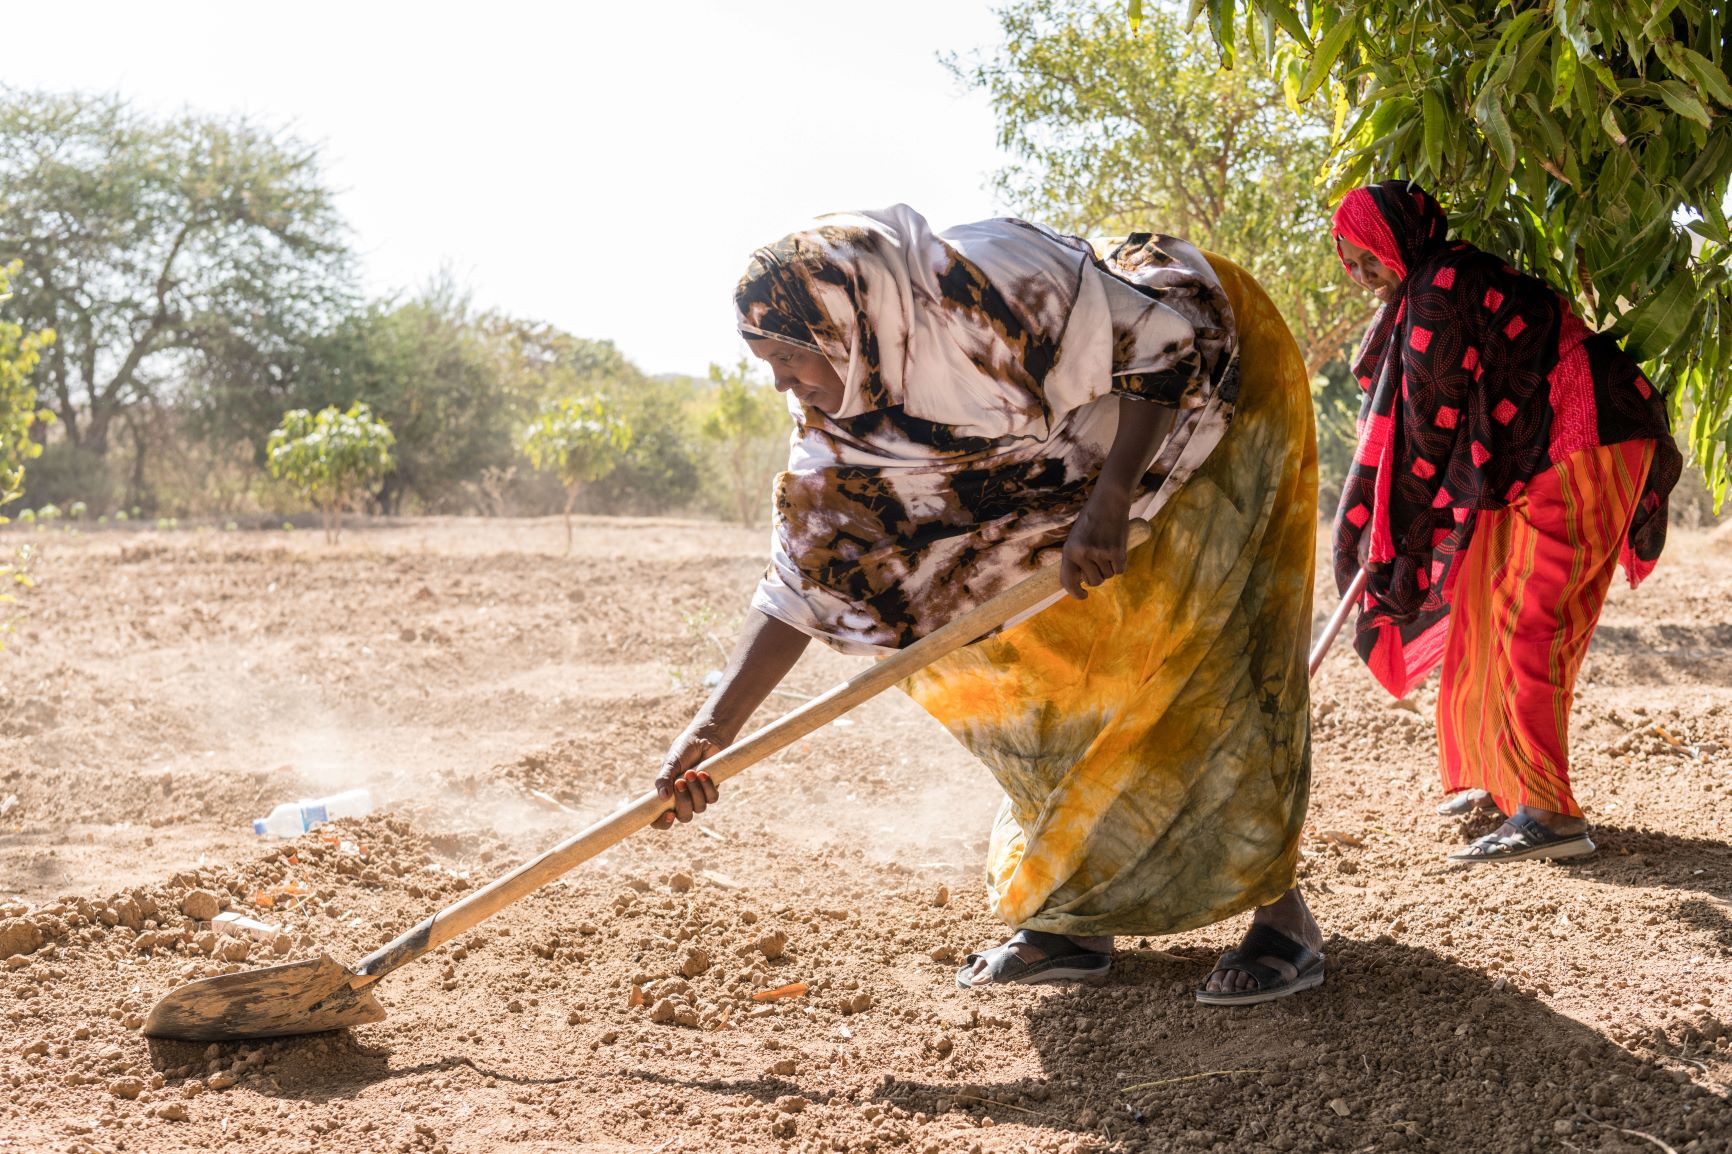 Mulheres cultivam frutas na Somailândia apesar da seca: estiagem prolongada e insegurança alimentar desafiam comunidades em região da África Oriental (Foto: Mahelder Haileselassie / ActionAid)